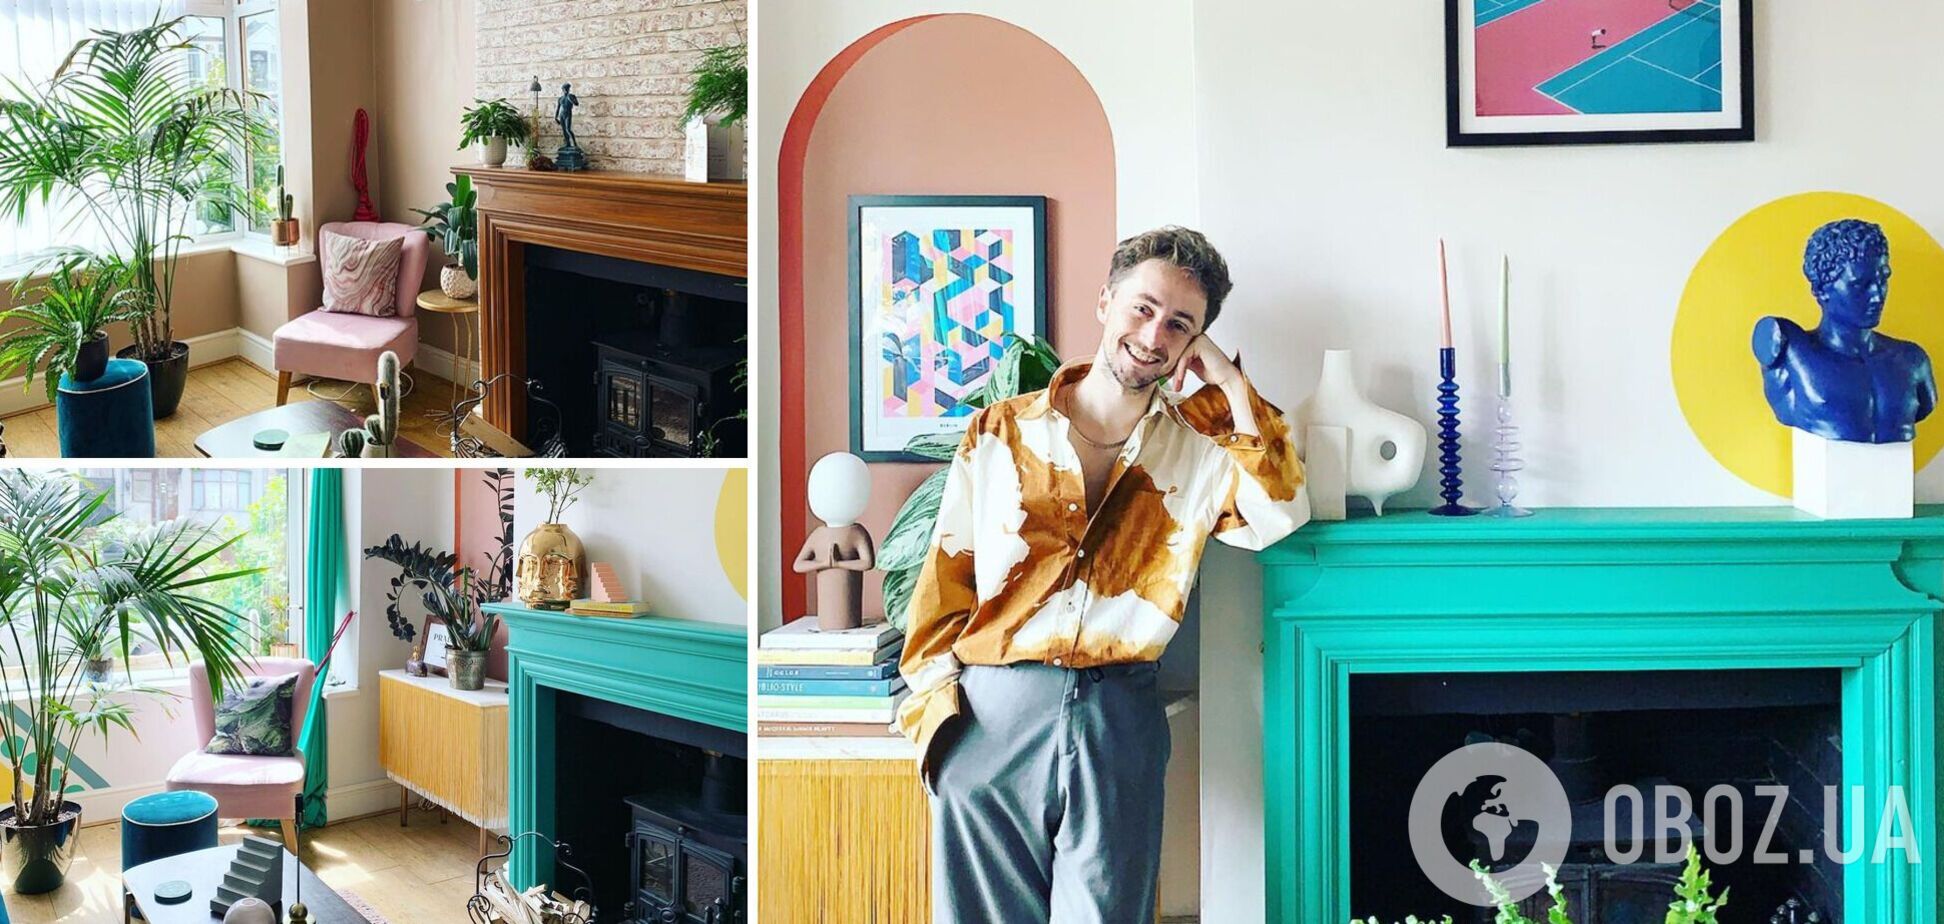 Мужчина своими руками преобразил простое жилище в дом для фото в Instagram: как он выглядит